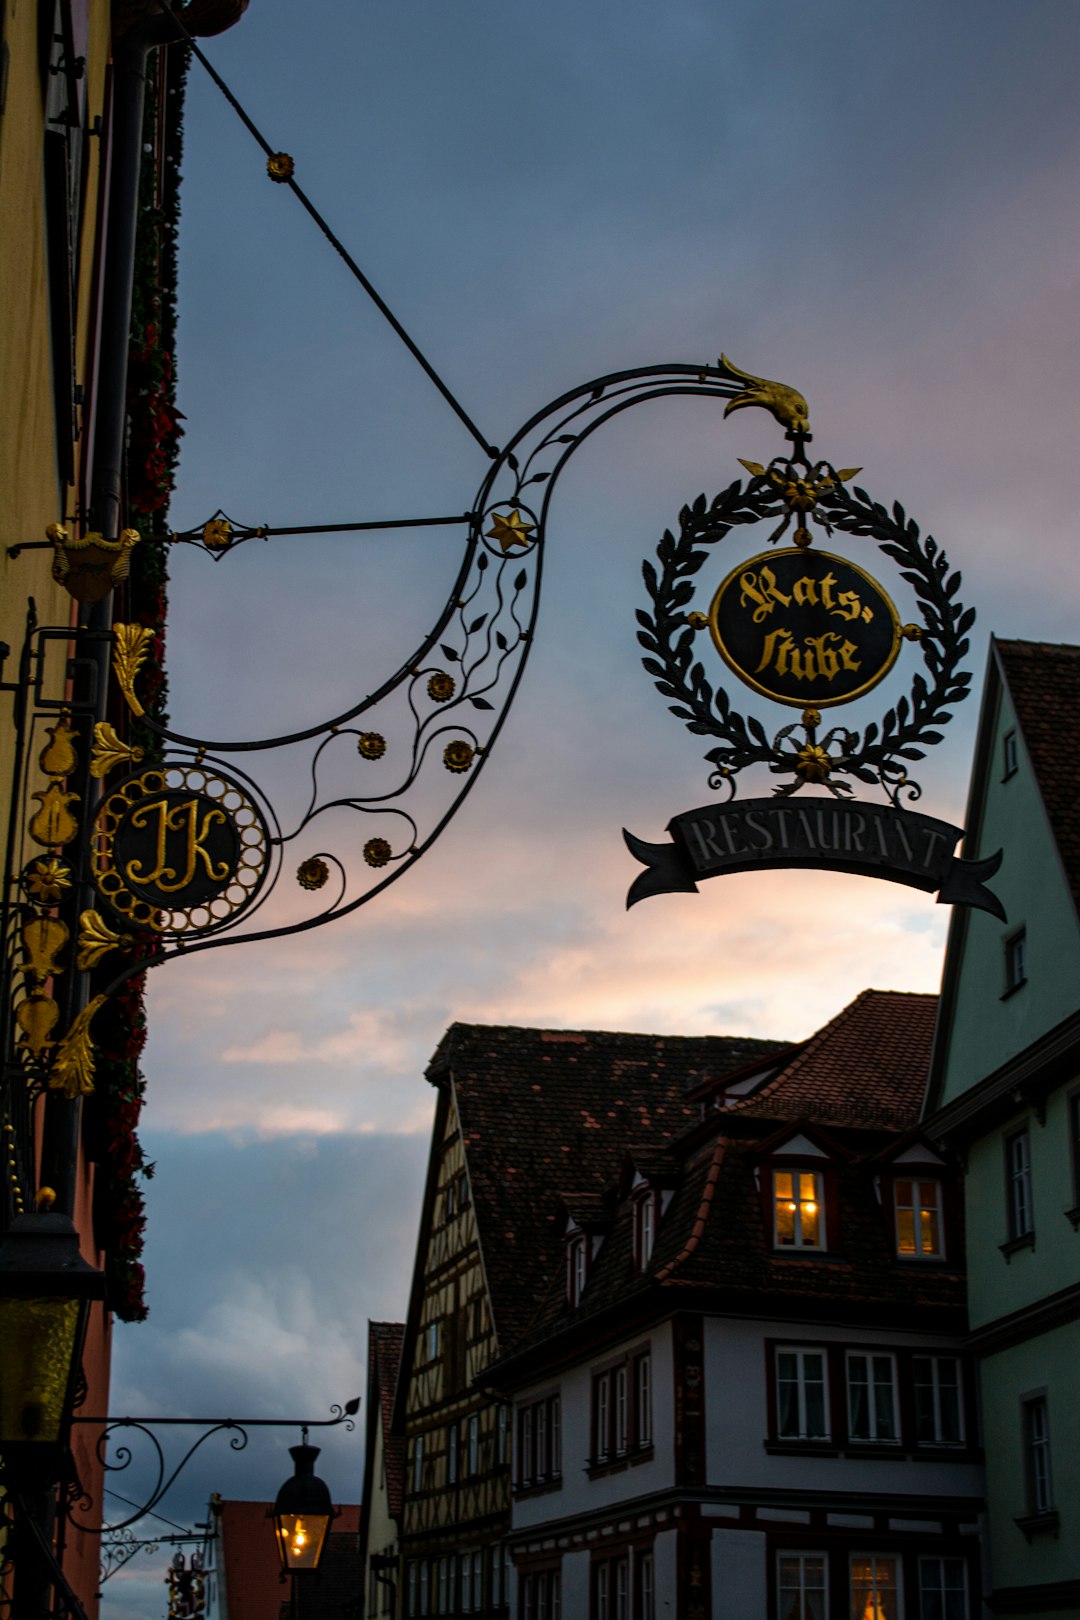 Historic restaurant entrance in Rothenburg ob der Tauber.